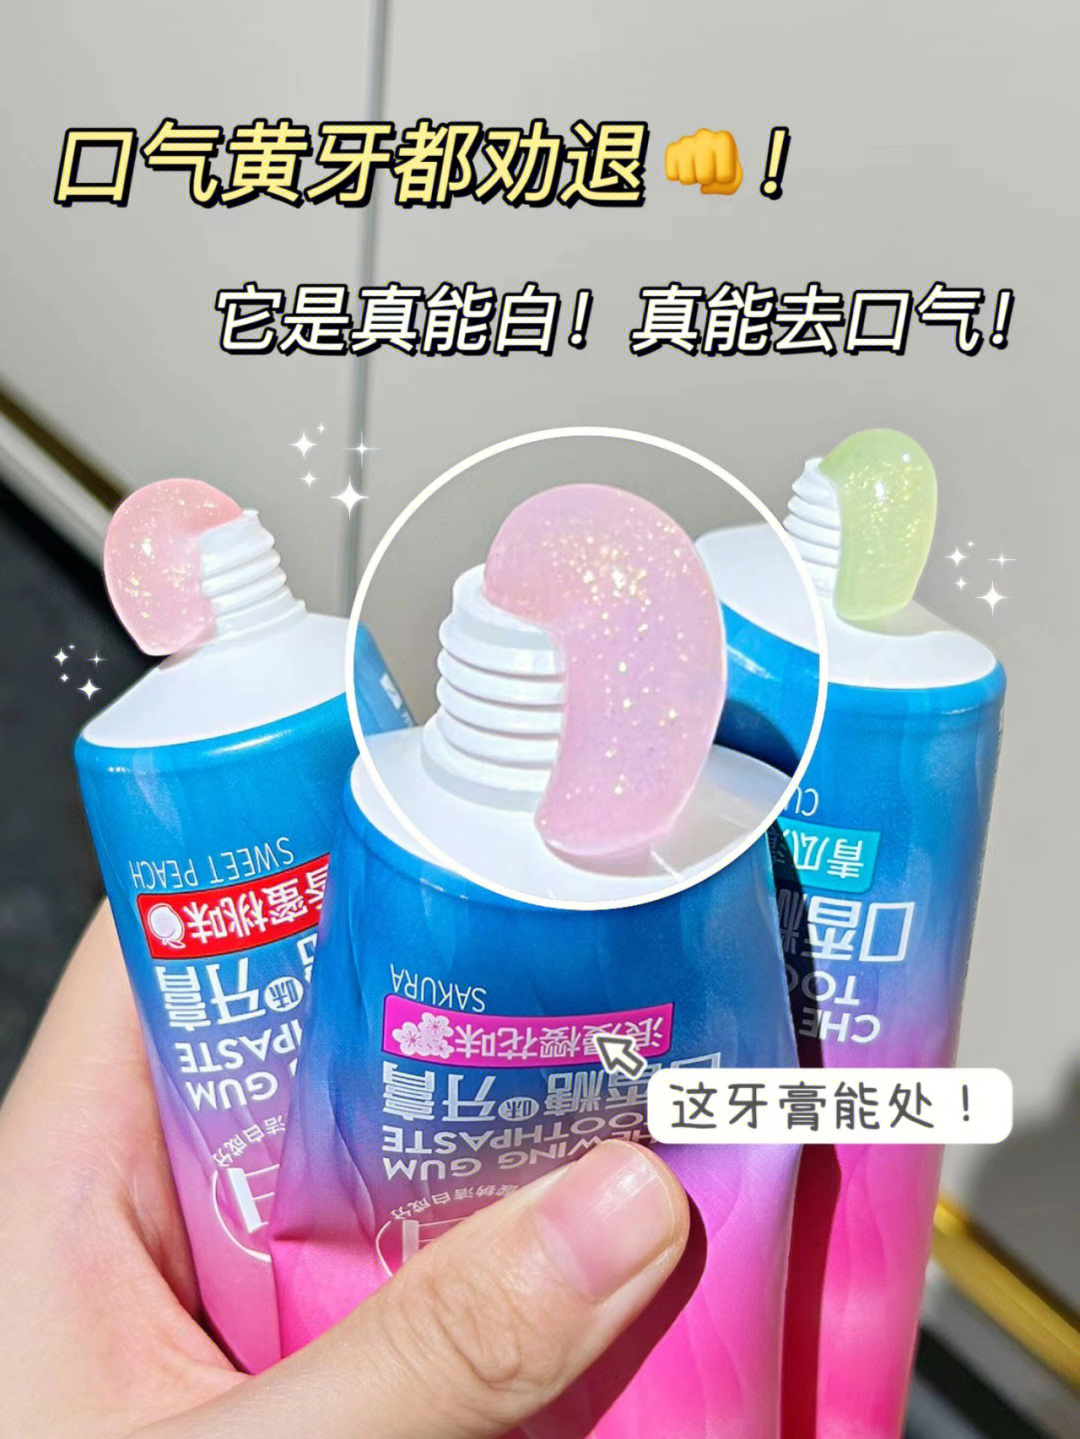 冰泉口香糖牙膏logo图片